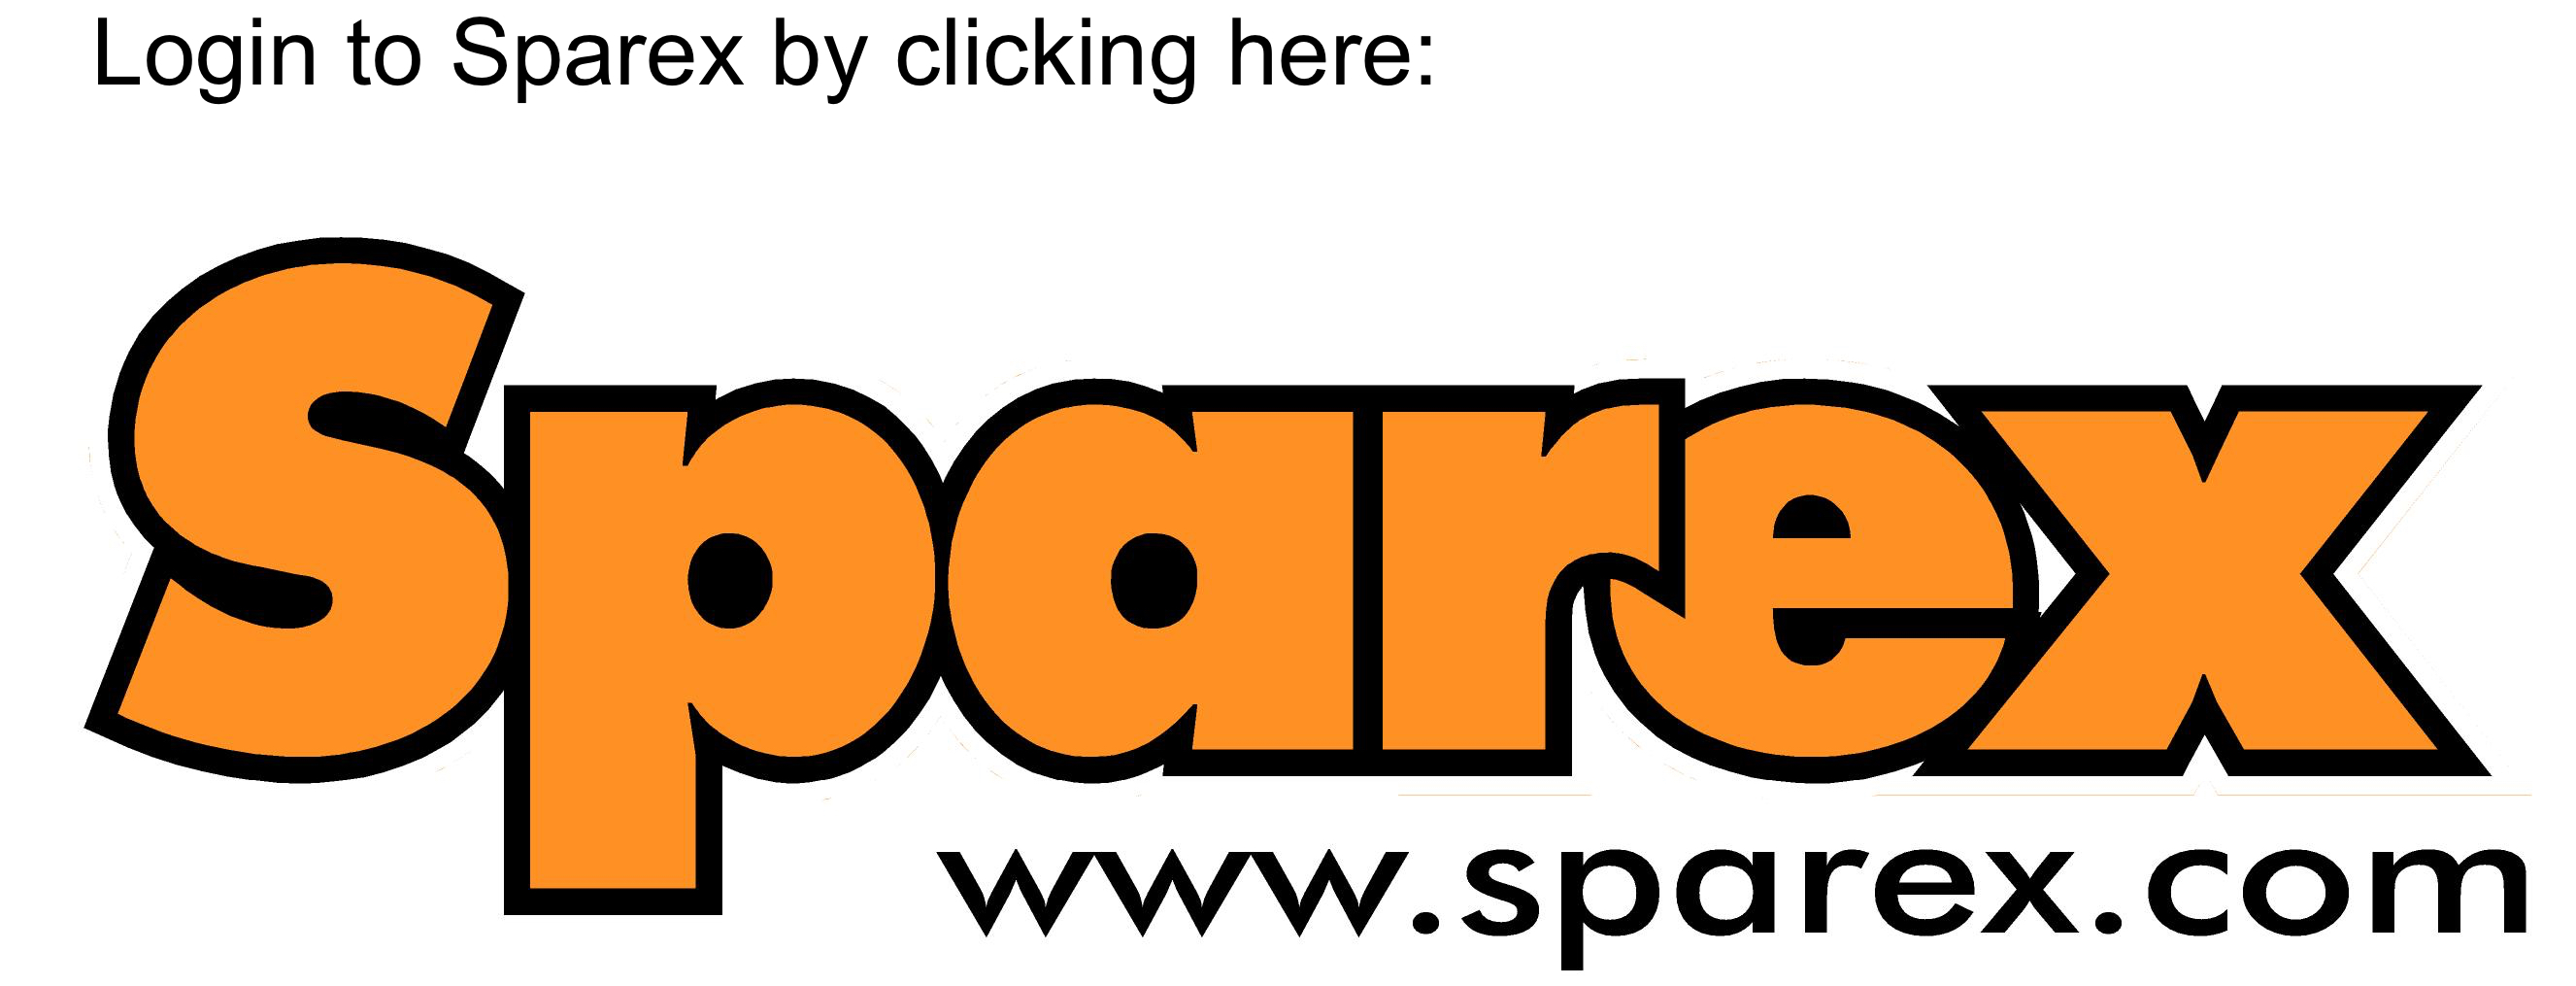 Sparex